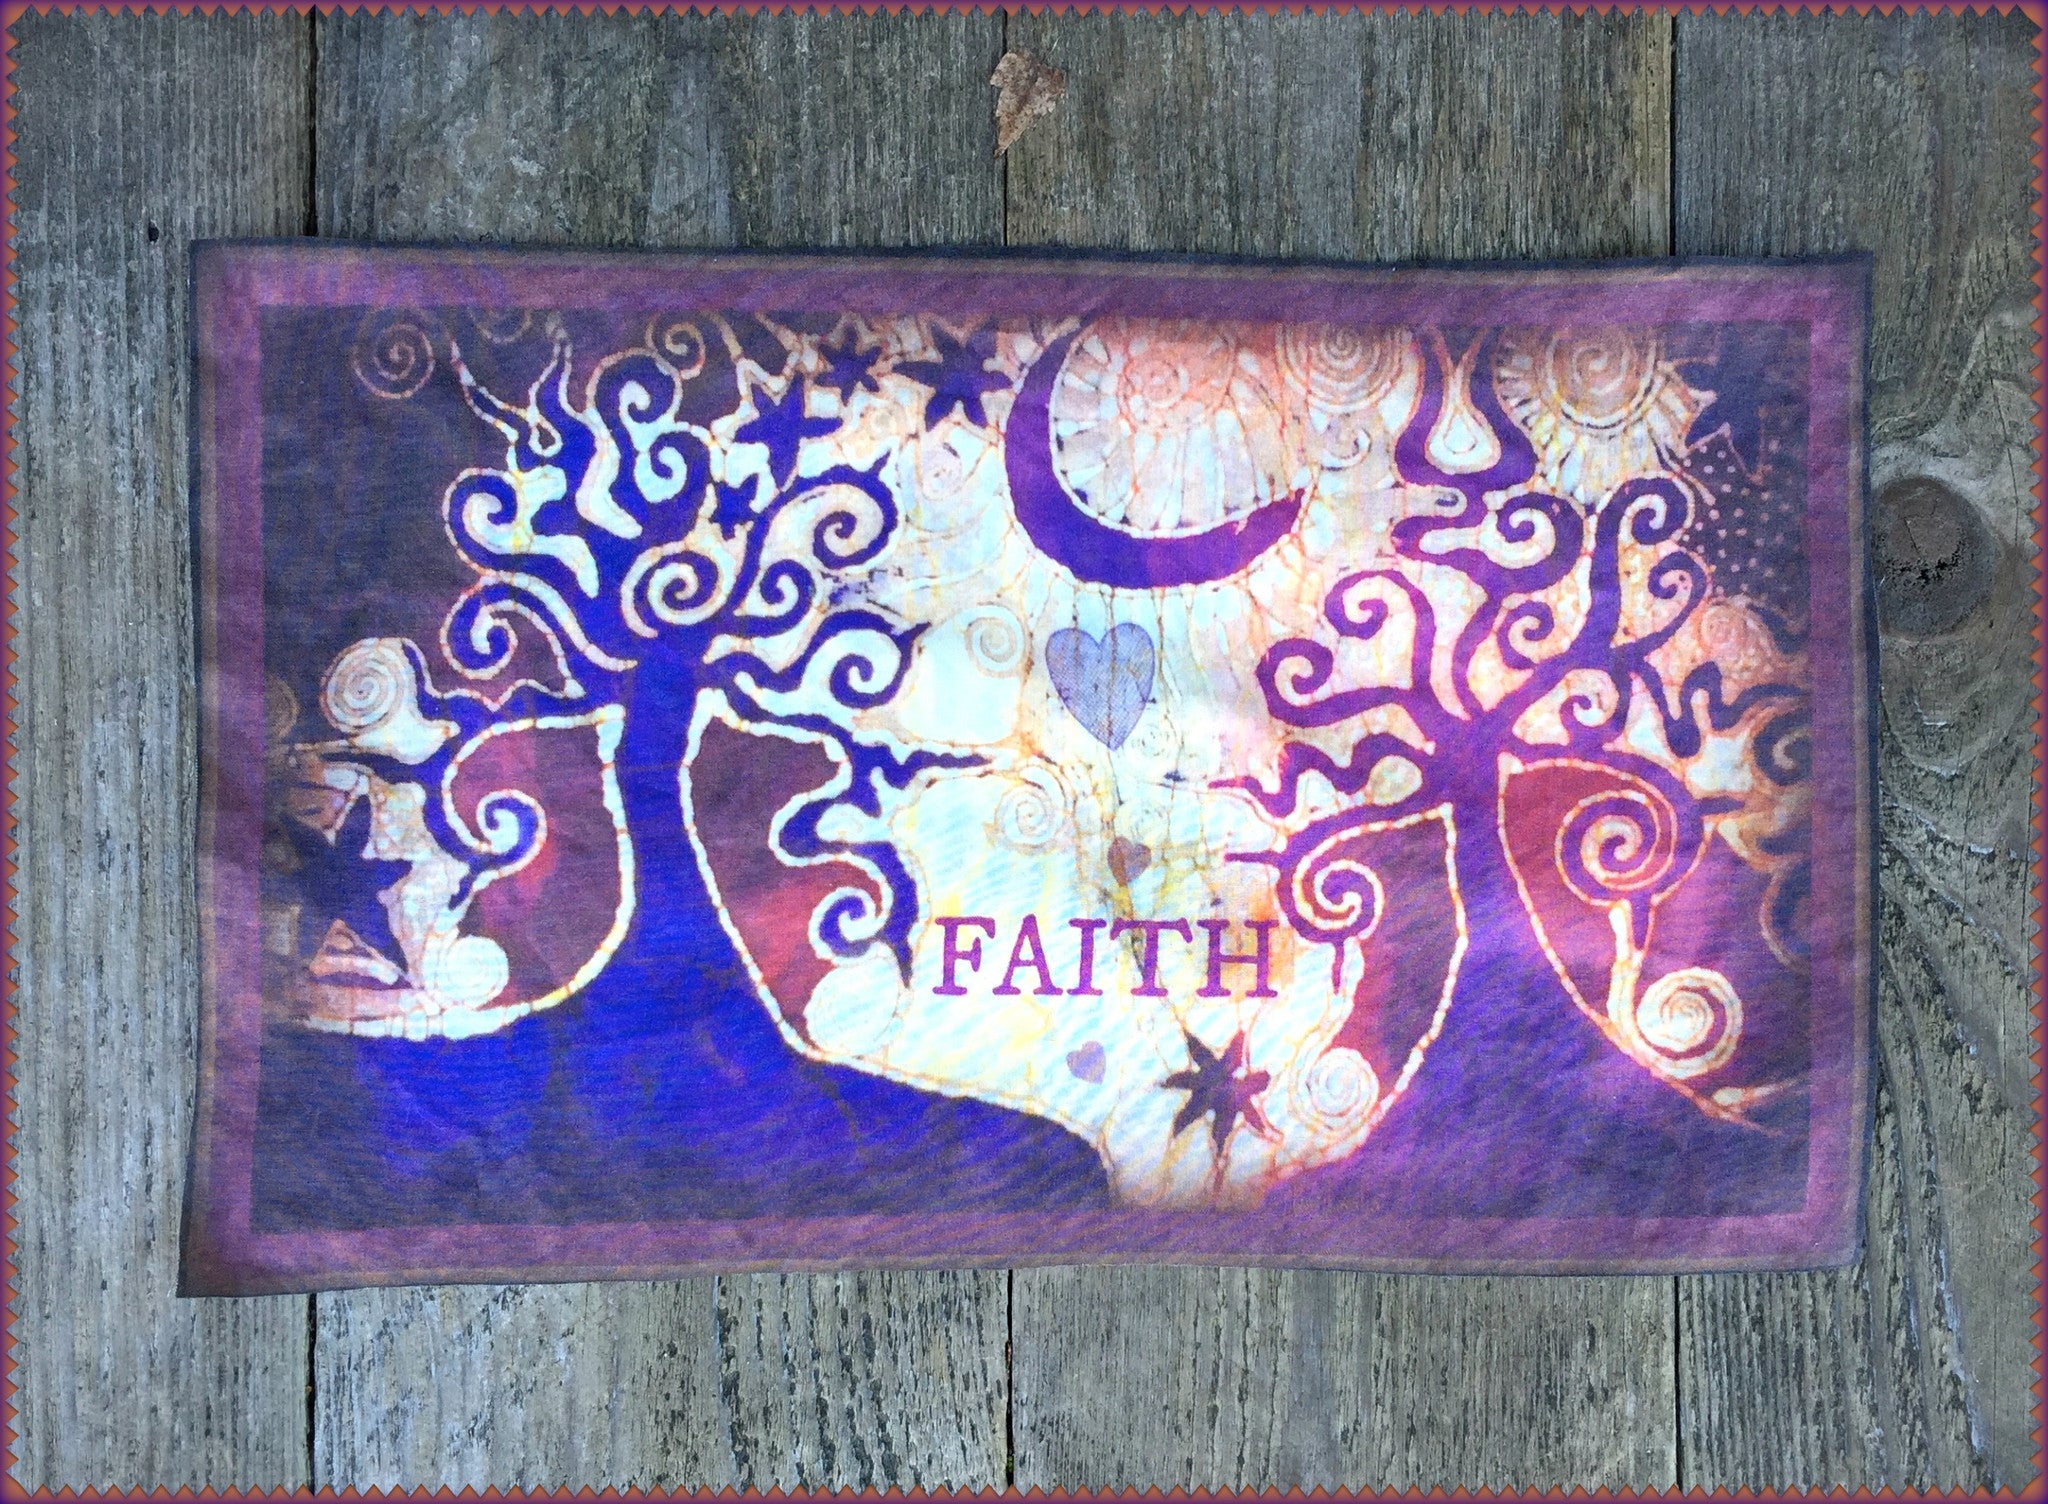 Trinidad Batik Fabric Print Patch – Batikwalla by Victoria